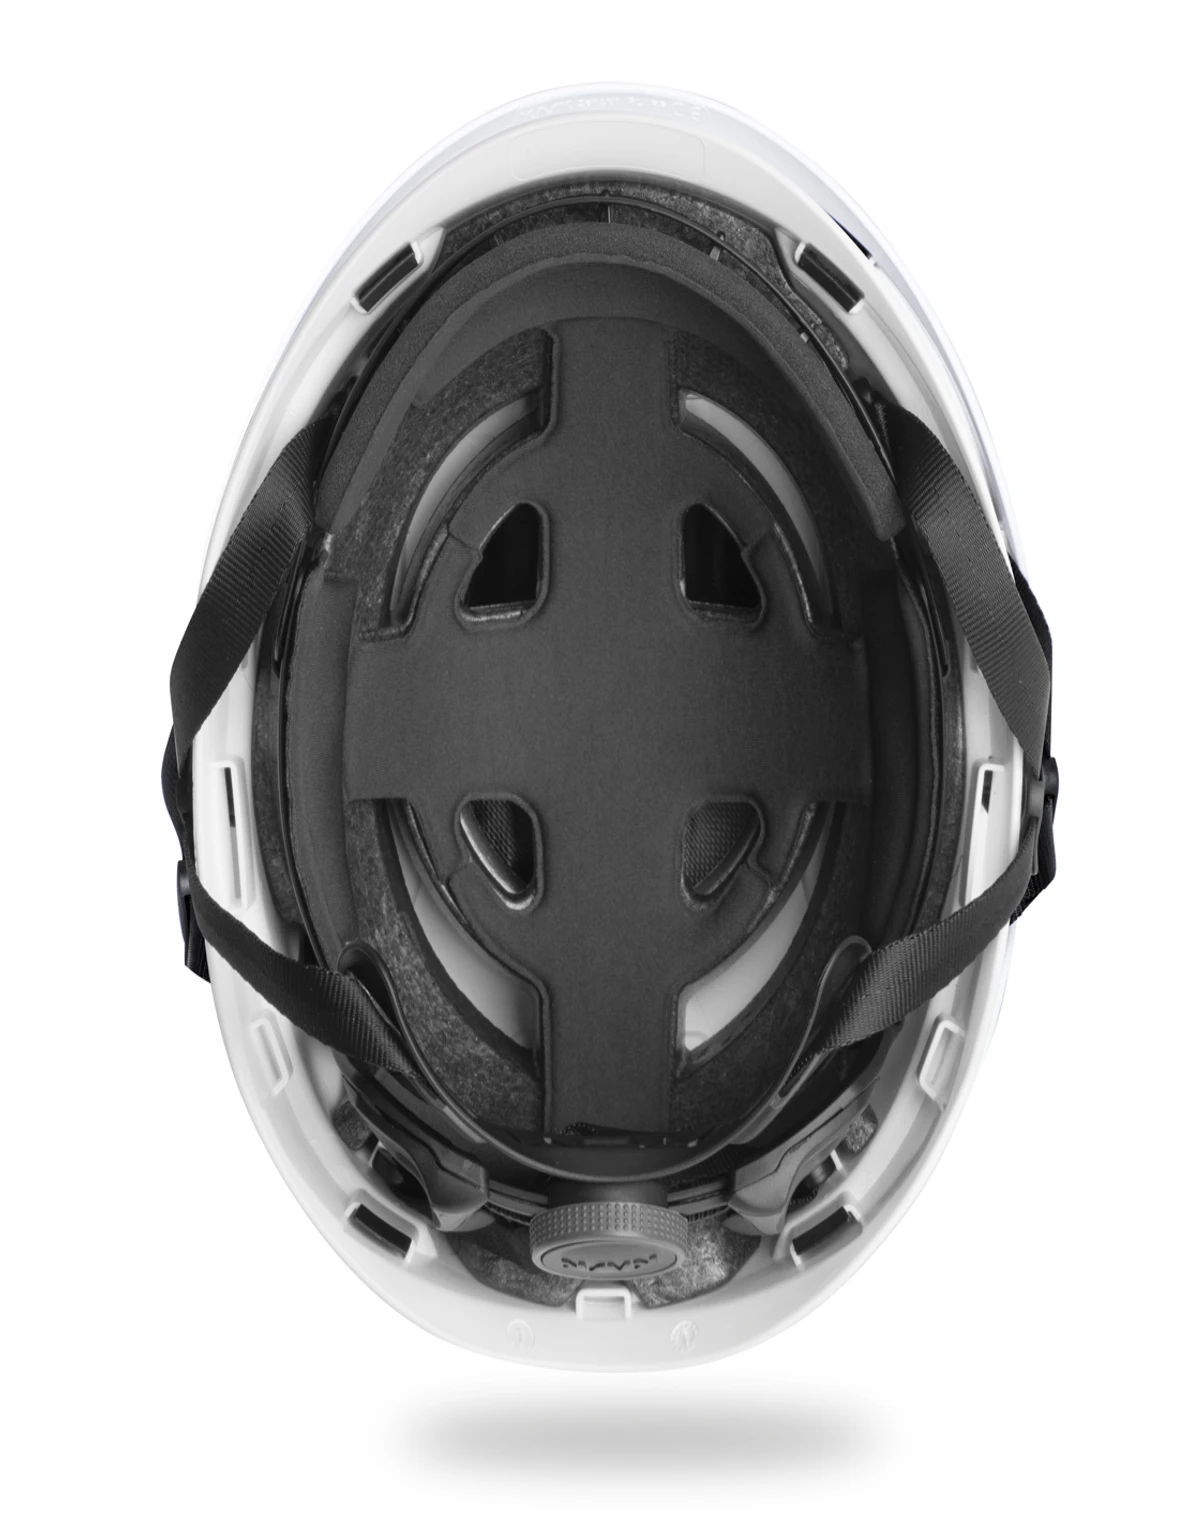 Kask Zenith X2 HI VIZ Helmets